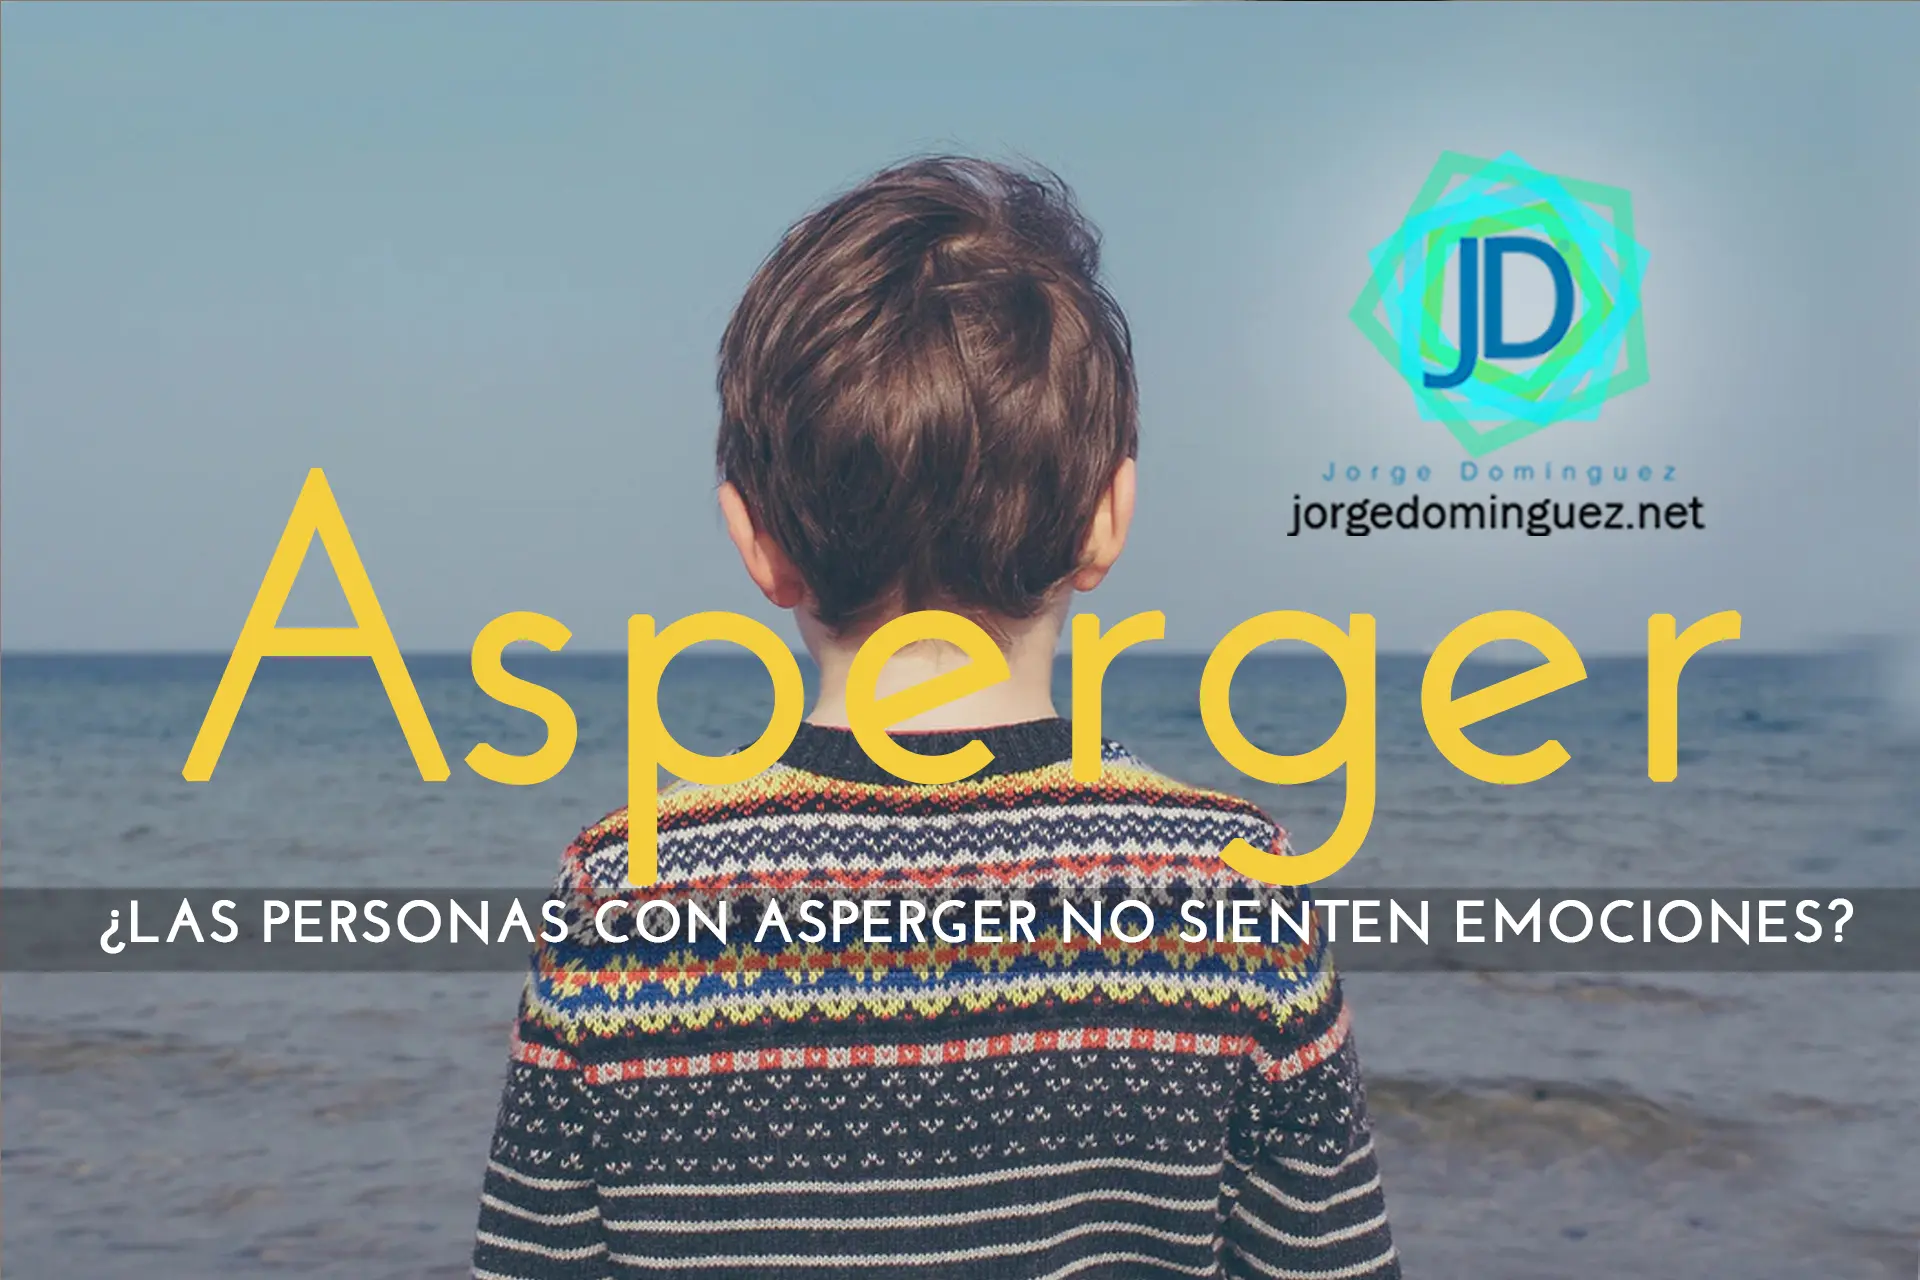 inteligencia emocional y asperger - Cómo tranquilizar a alguien con Asperger